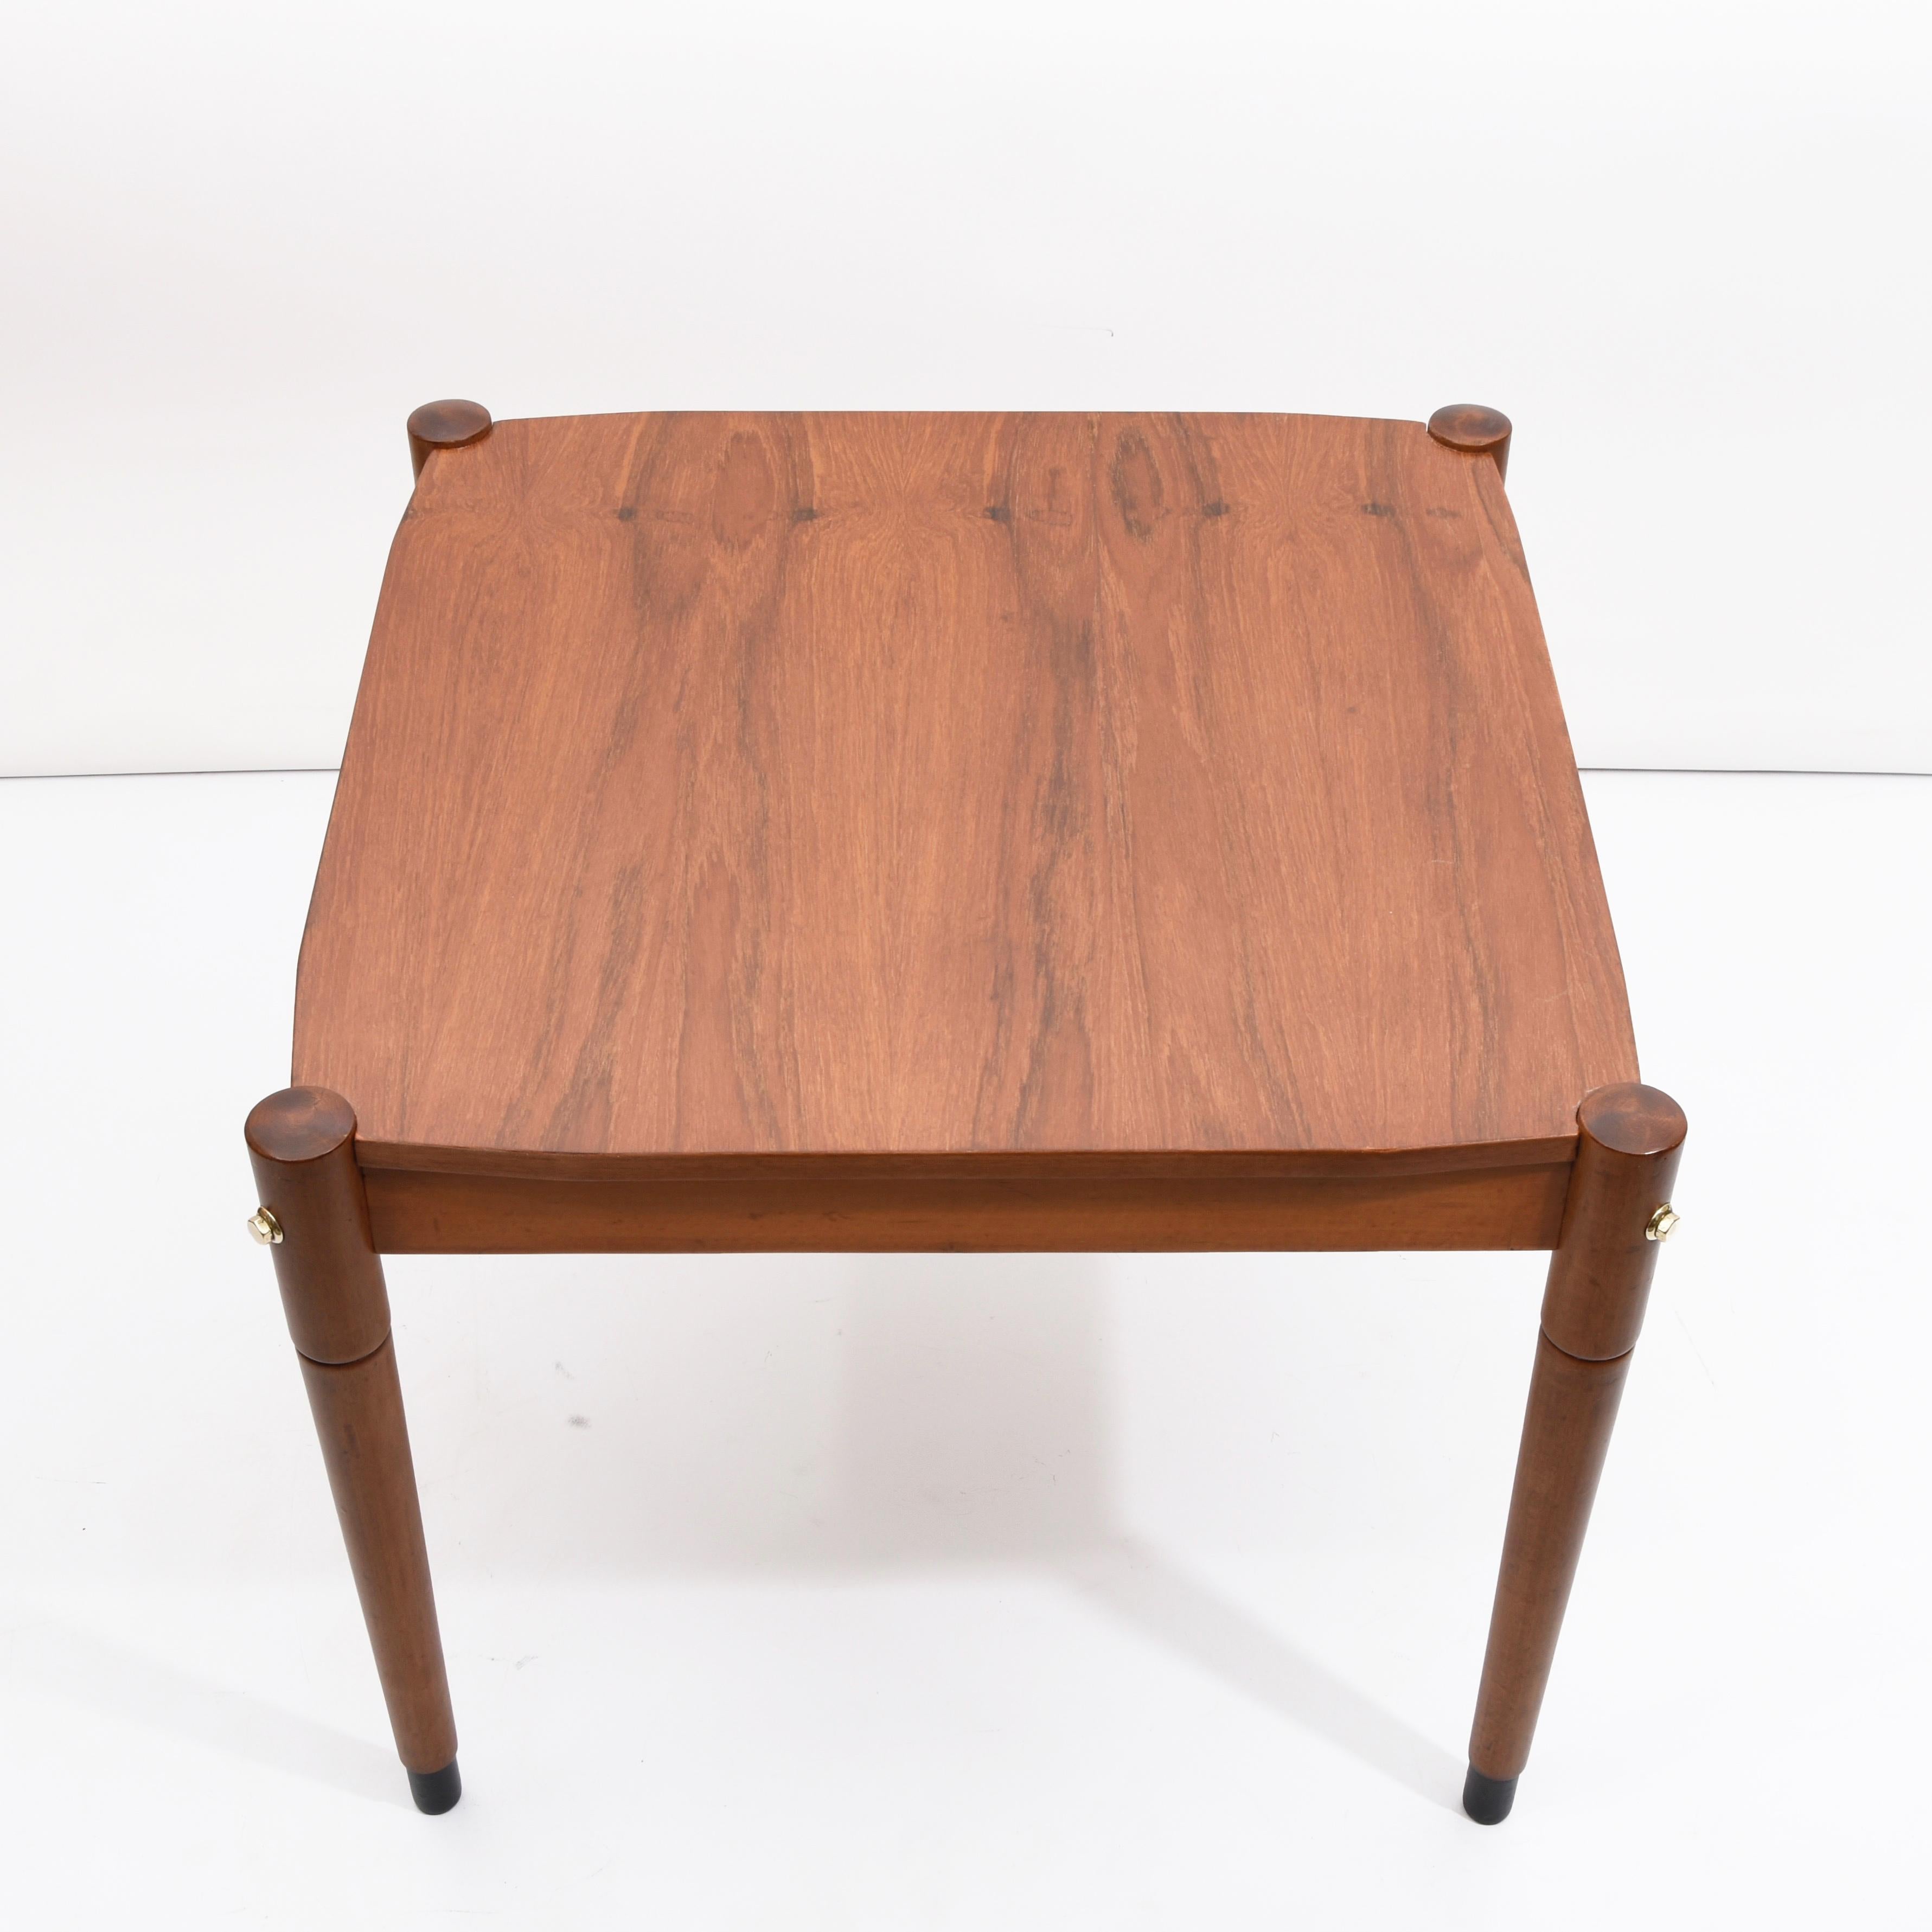 Amazing mid-century prototype coffee table in solid walnut wood and brass finishes. Cet article fantastique a été produit en Italie dans les années 1960 et il est attribué à Fratelli Reguitti pour Gio Ponti.

Cette pièce avant-gardiste se démonte